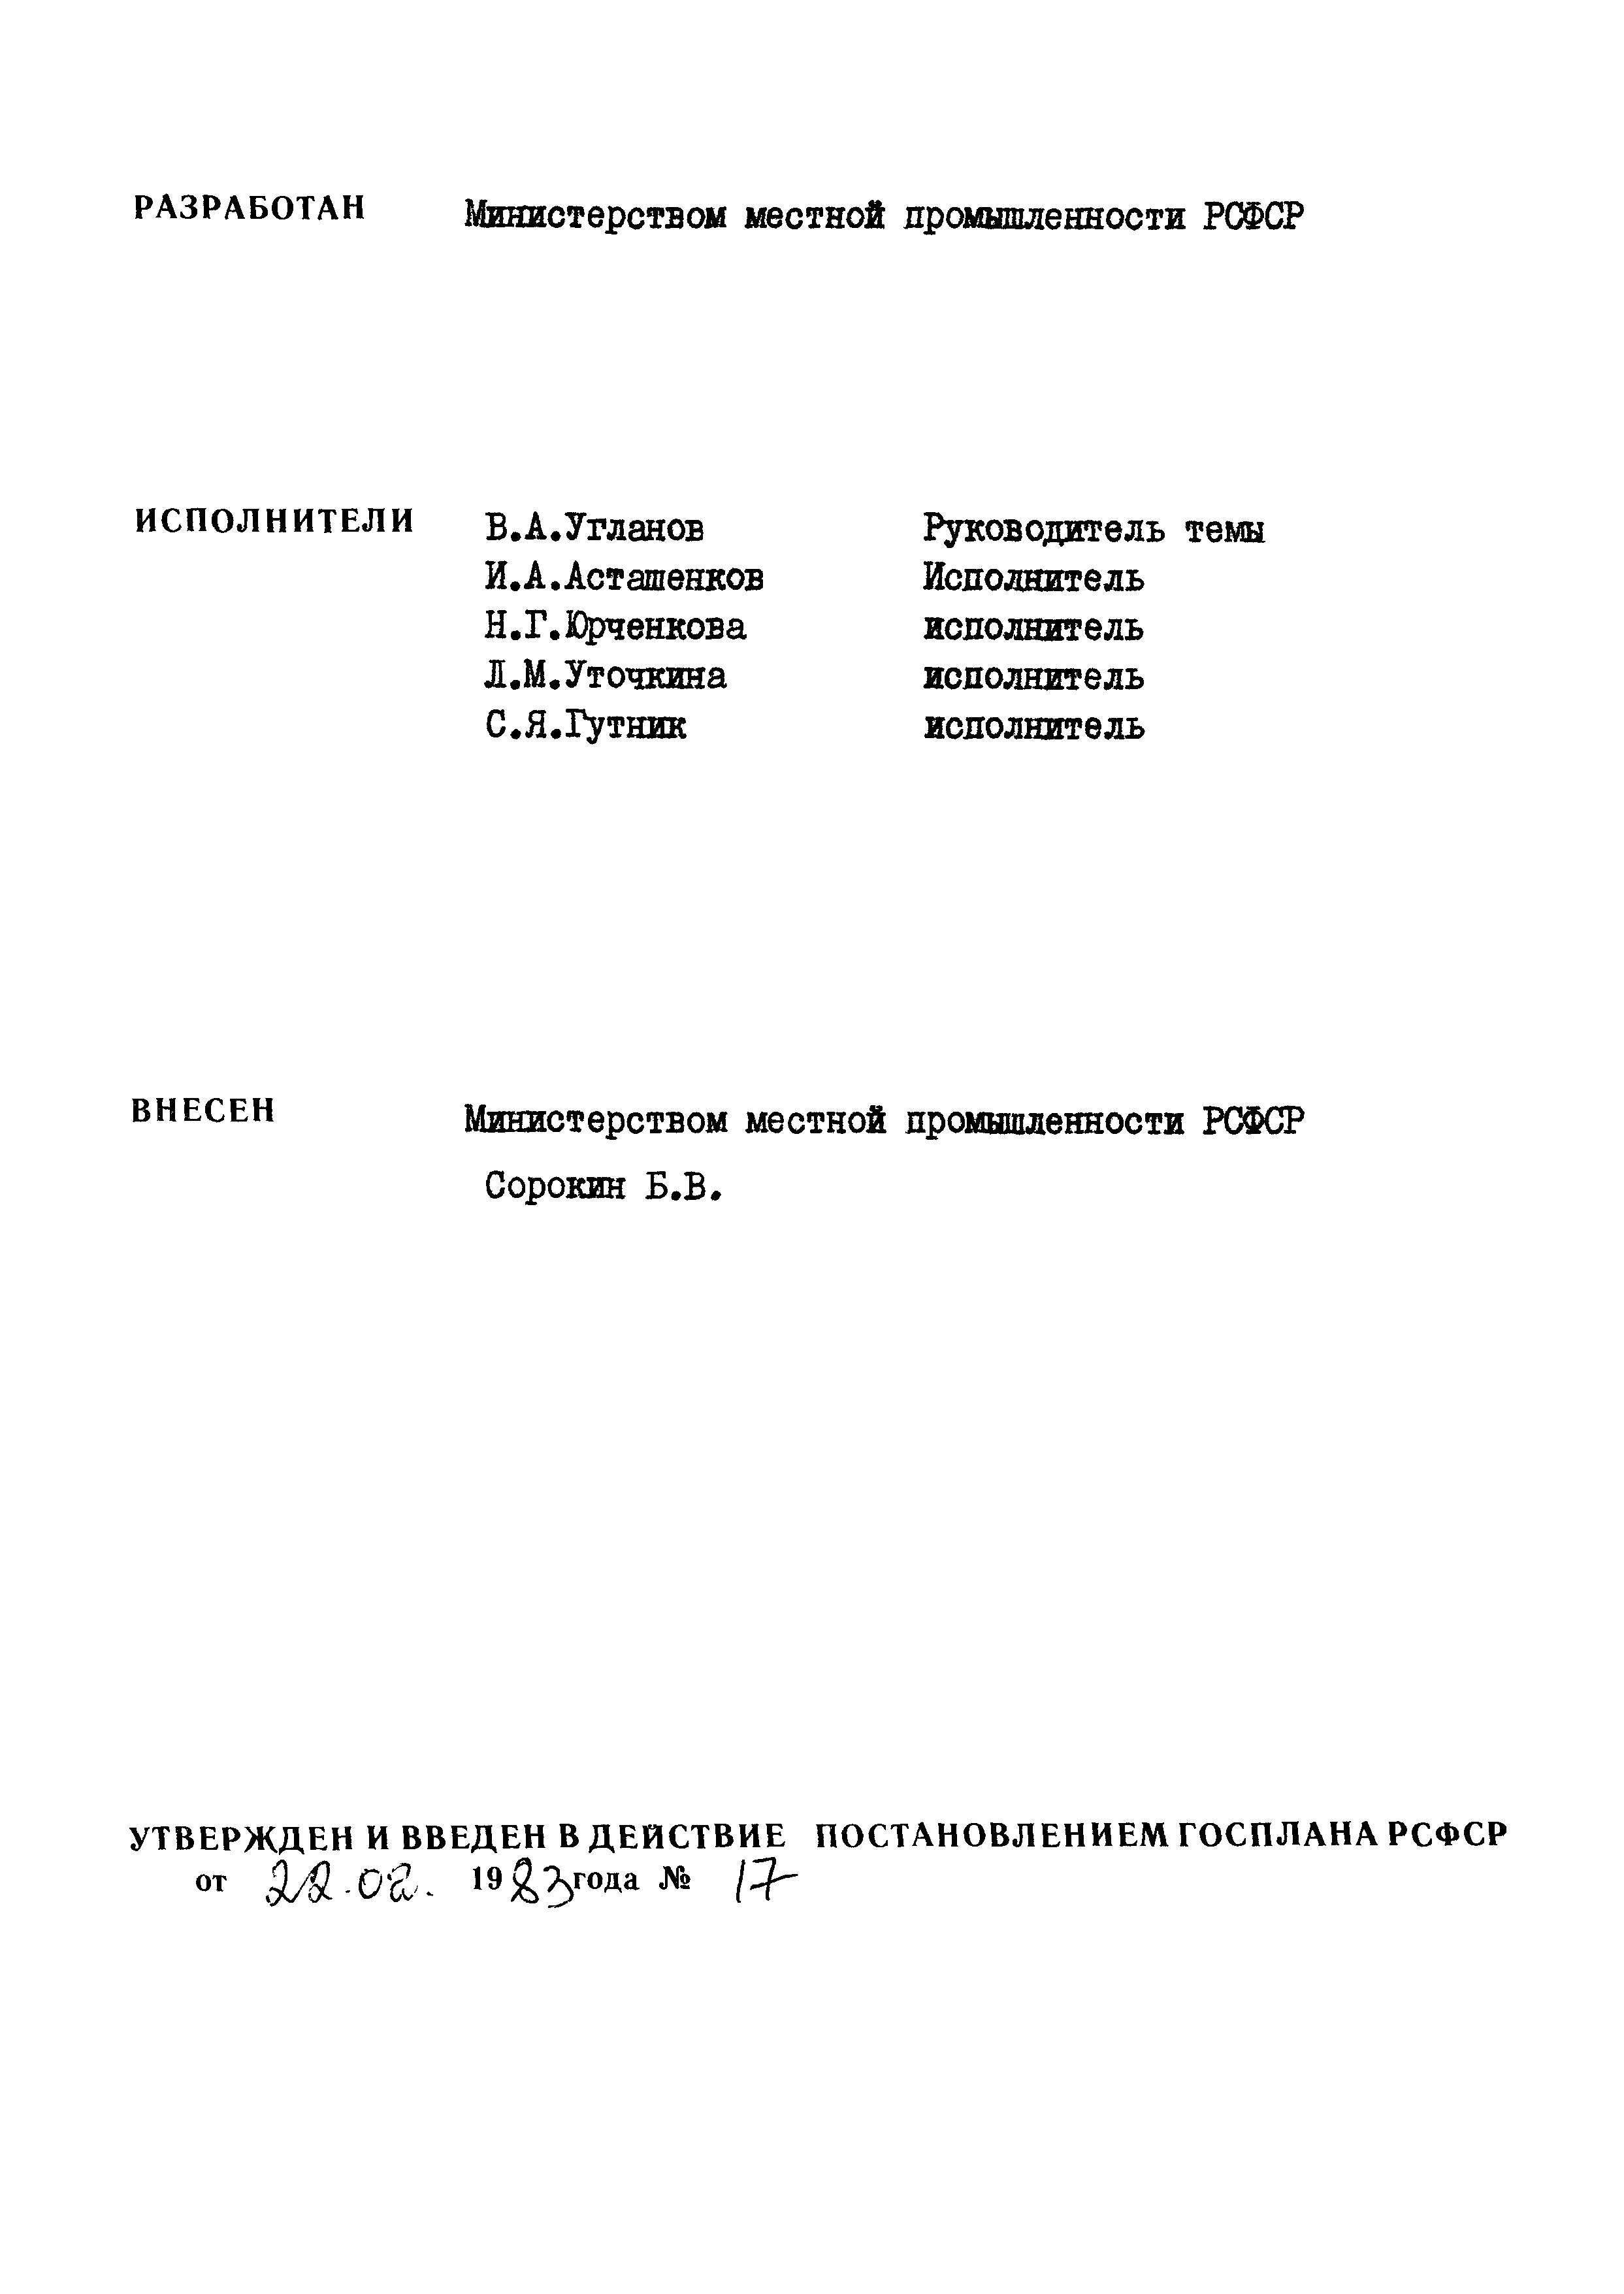 РСТ РСФСР 690-83